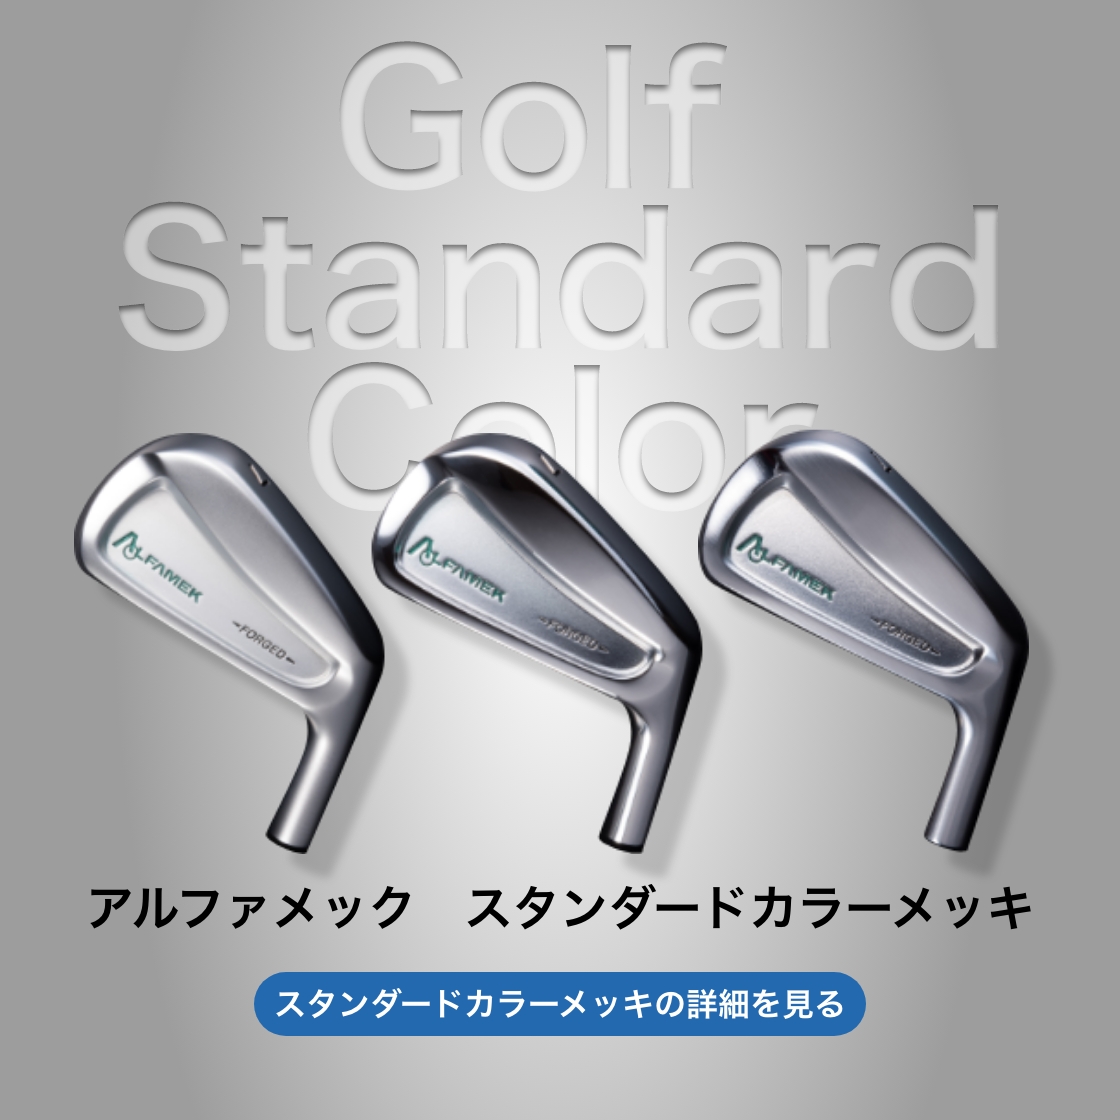 Golf Standard Color